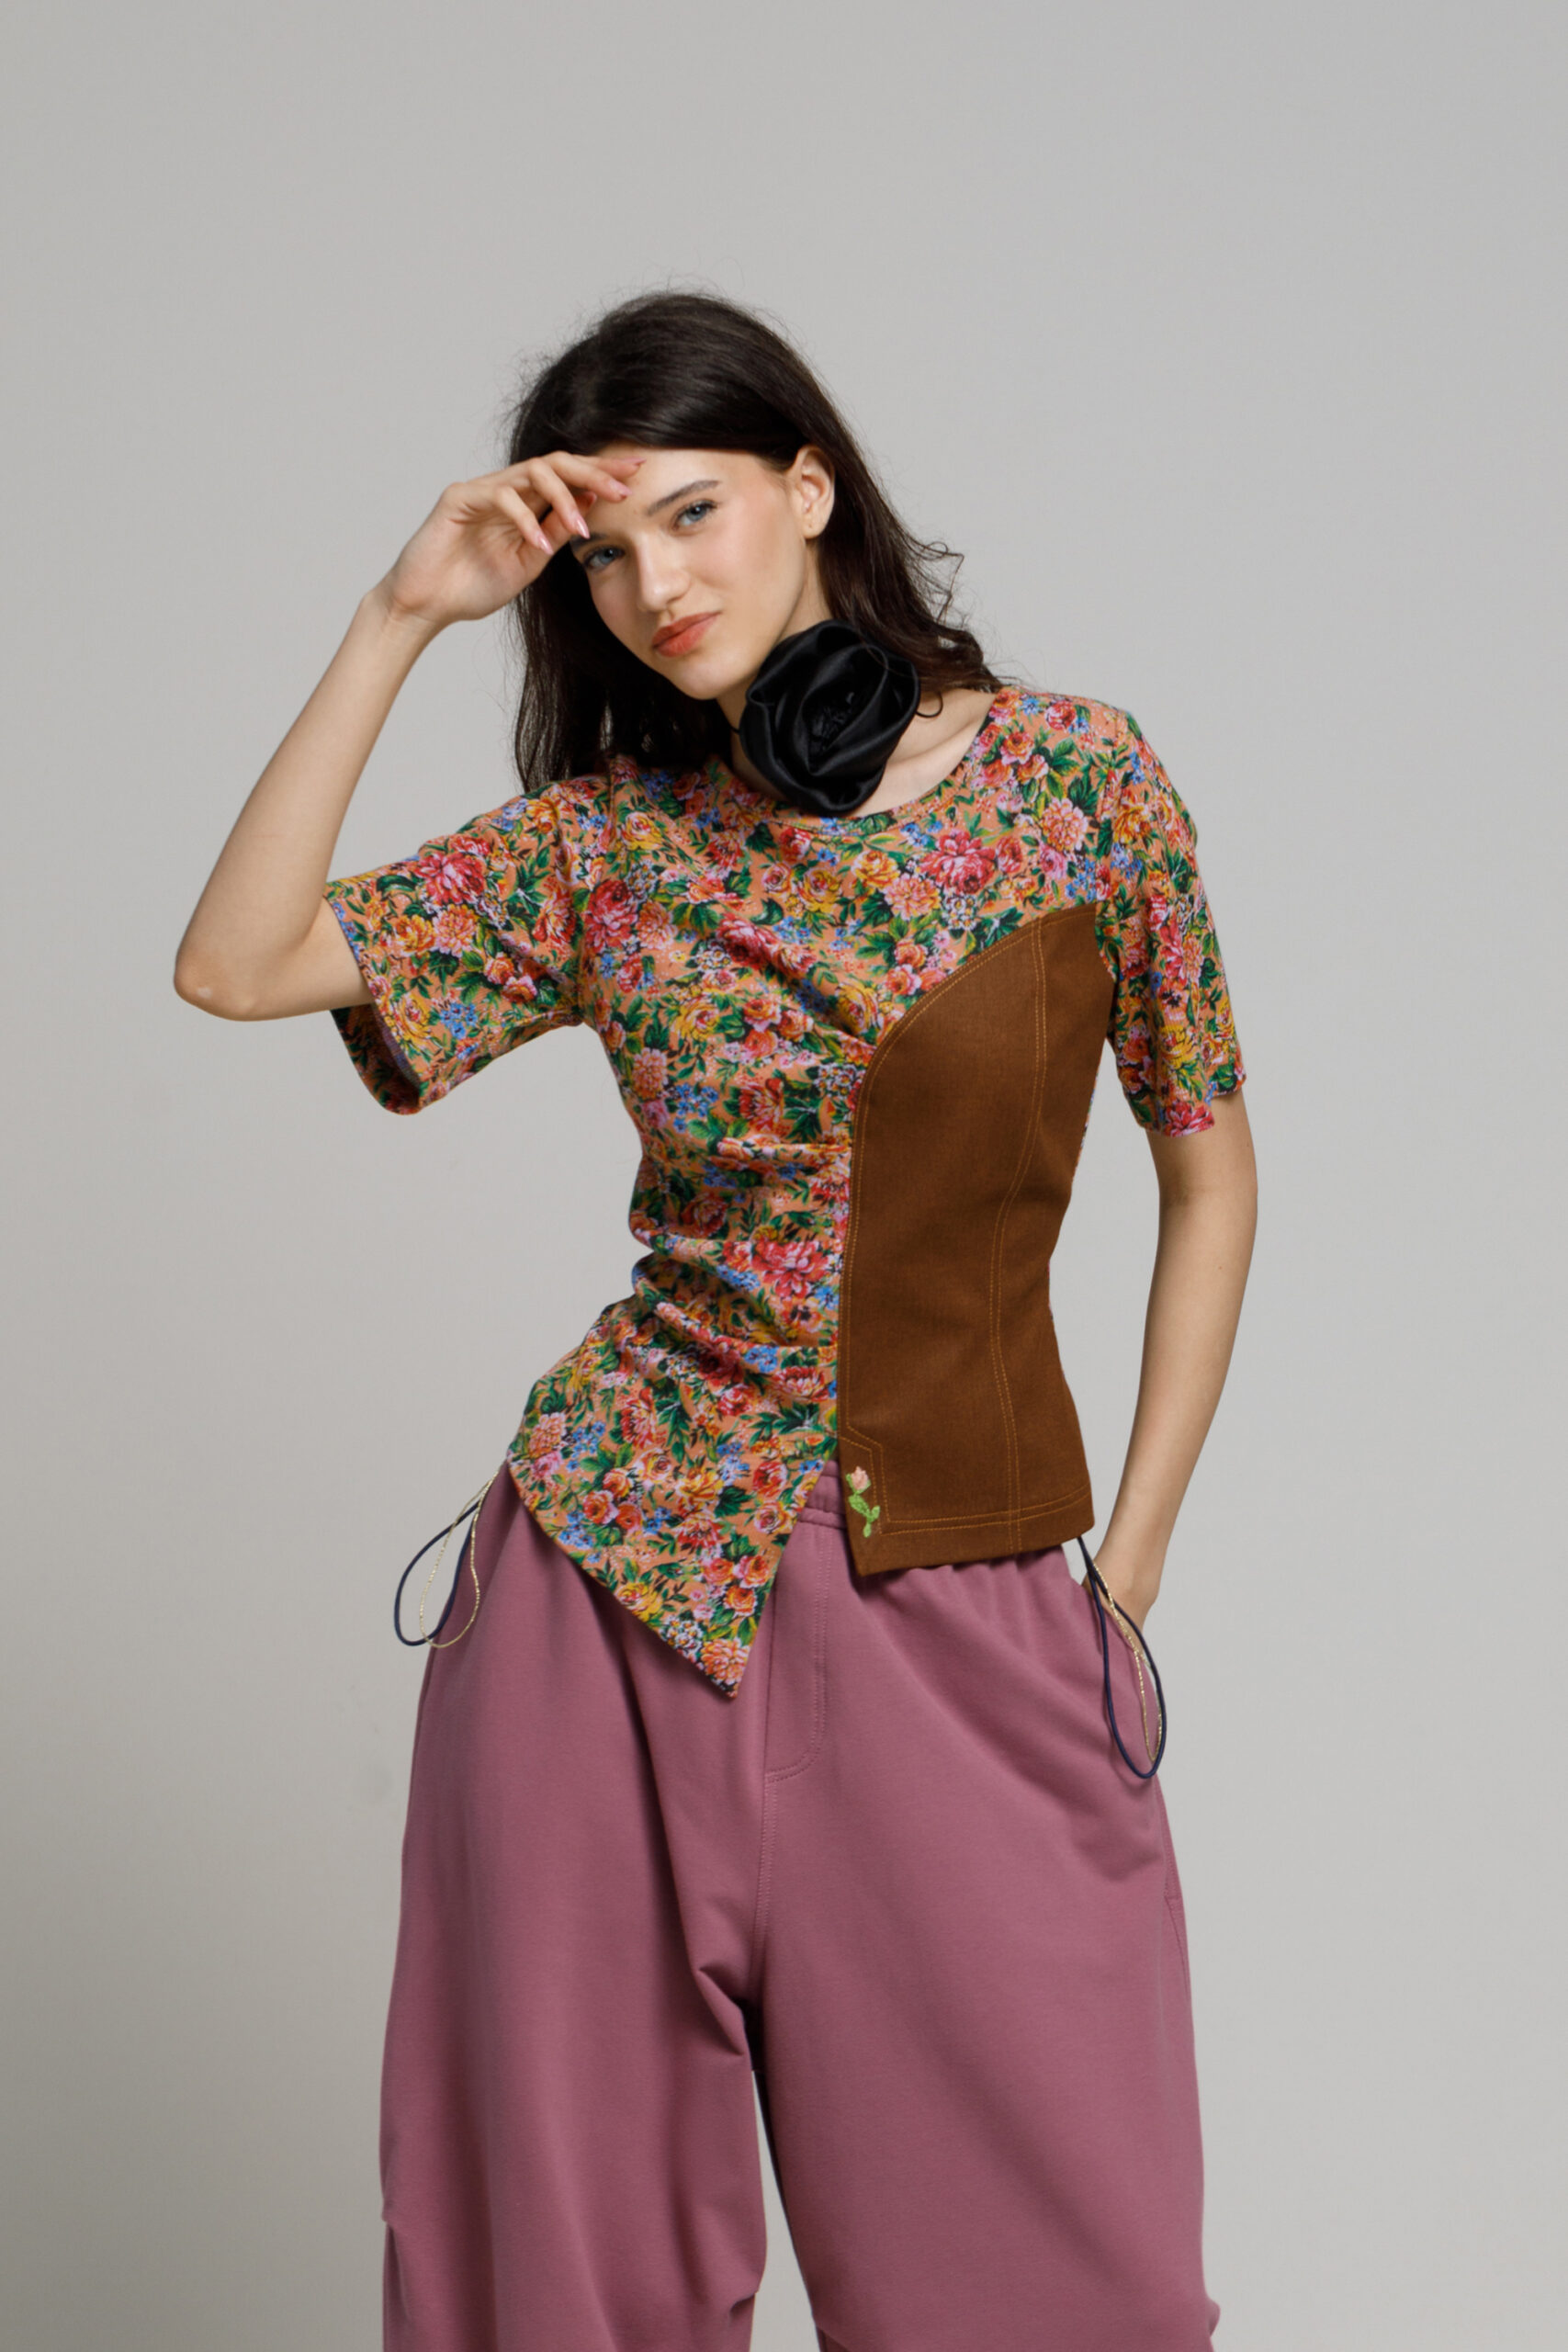 Bluza CHIARA cu imprimeu floral. Materiale naturale, design unicat, cu broderie si aplicatii handmade